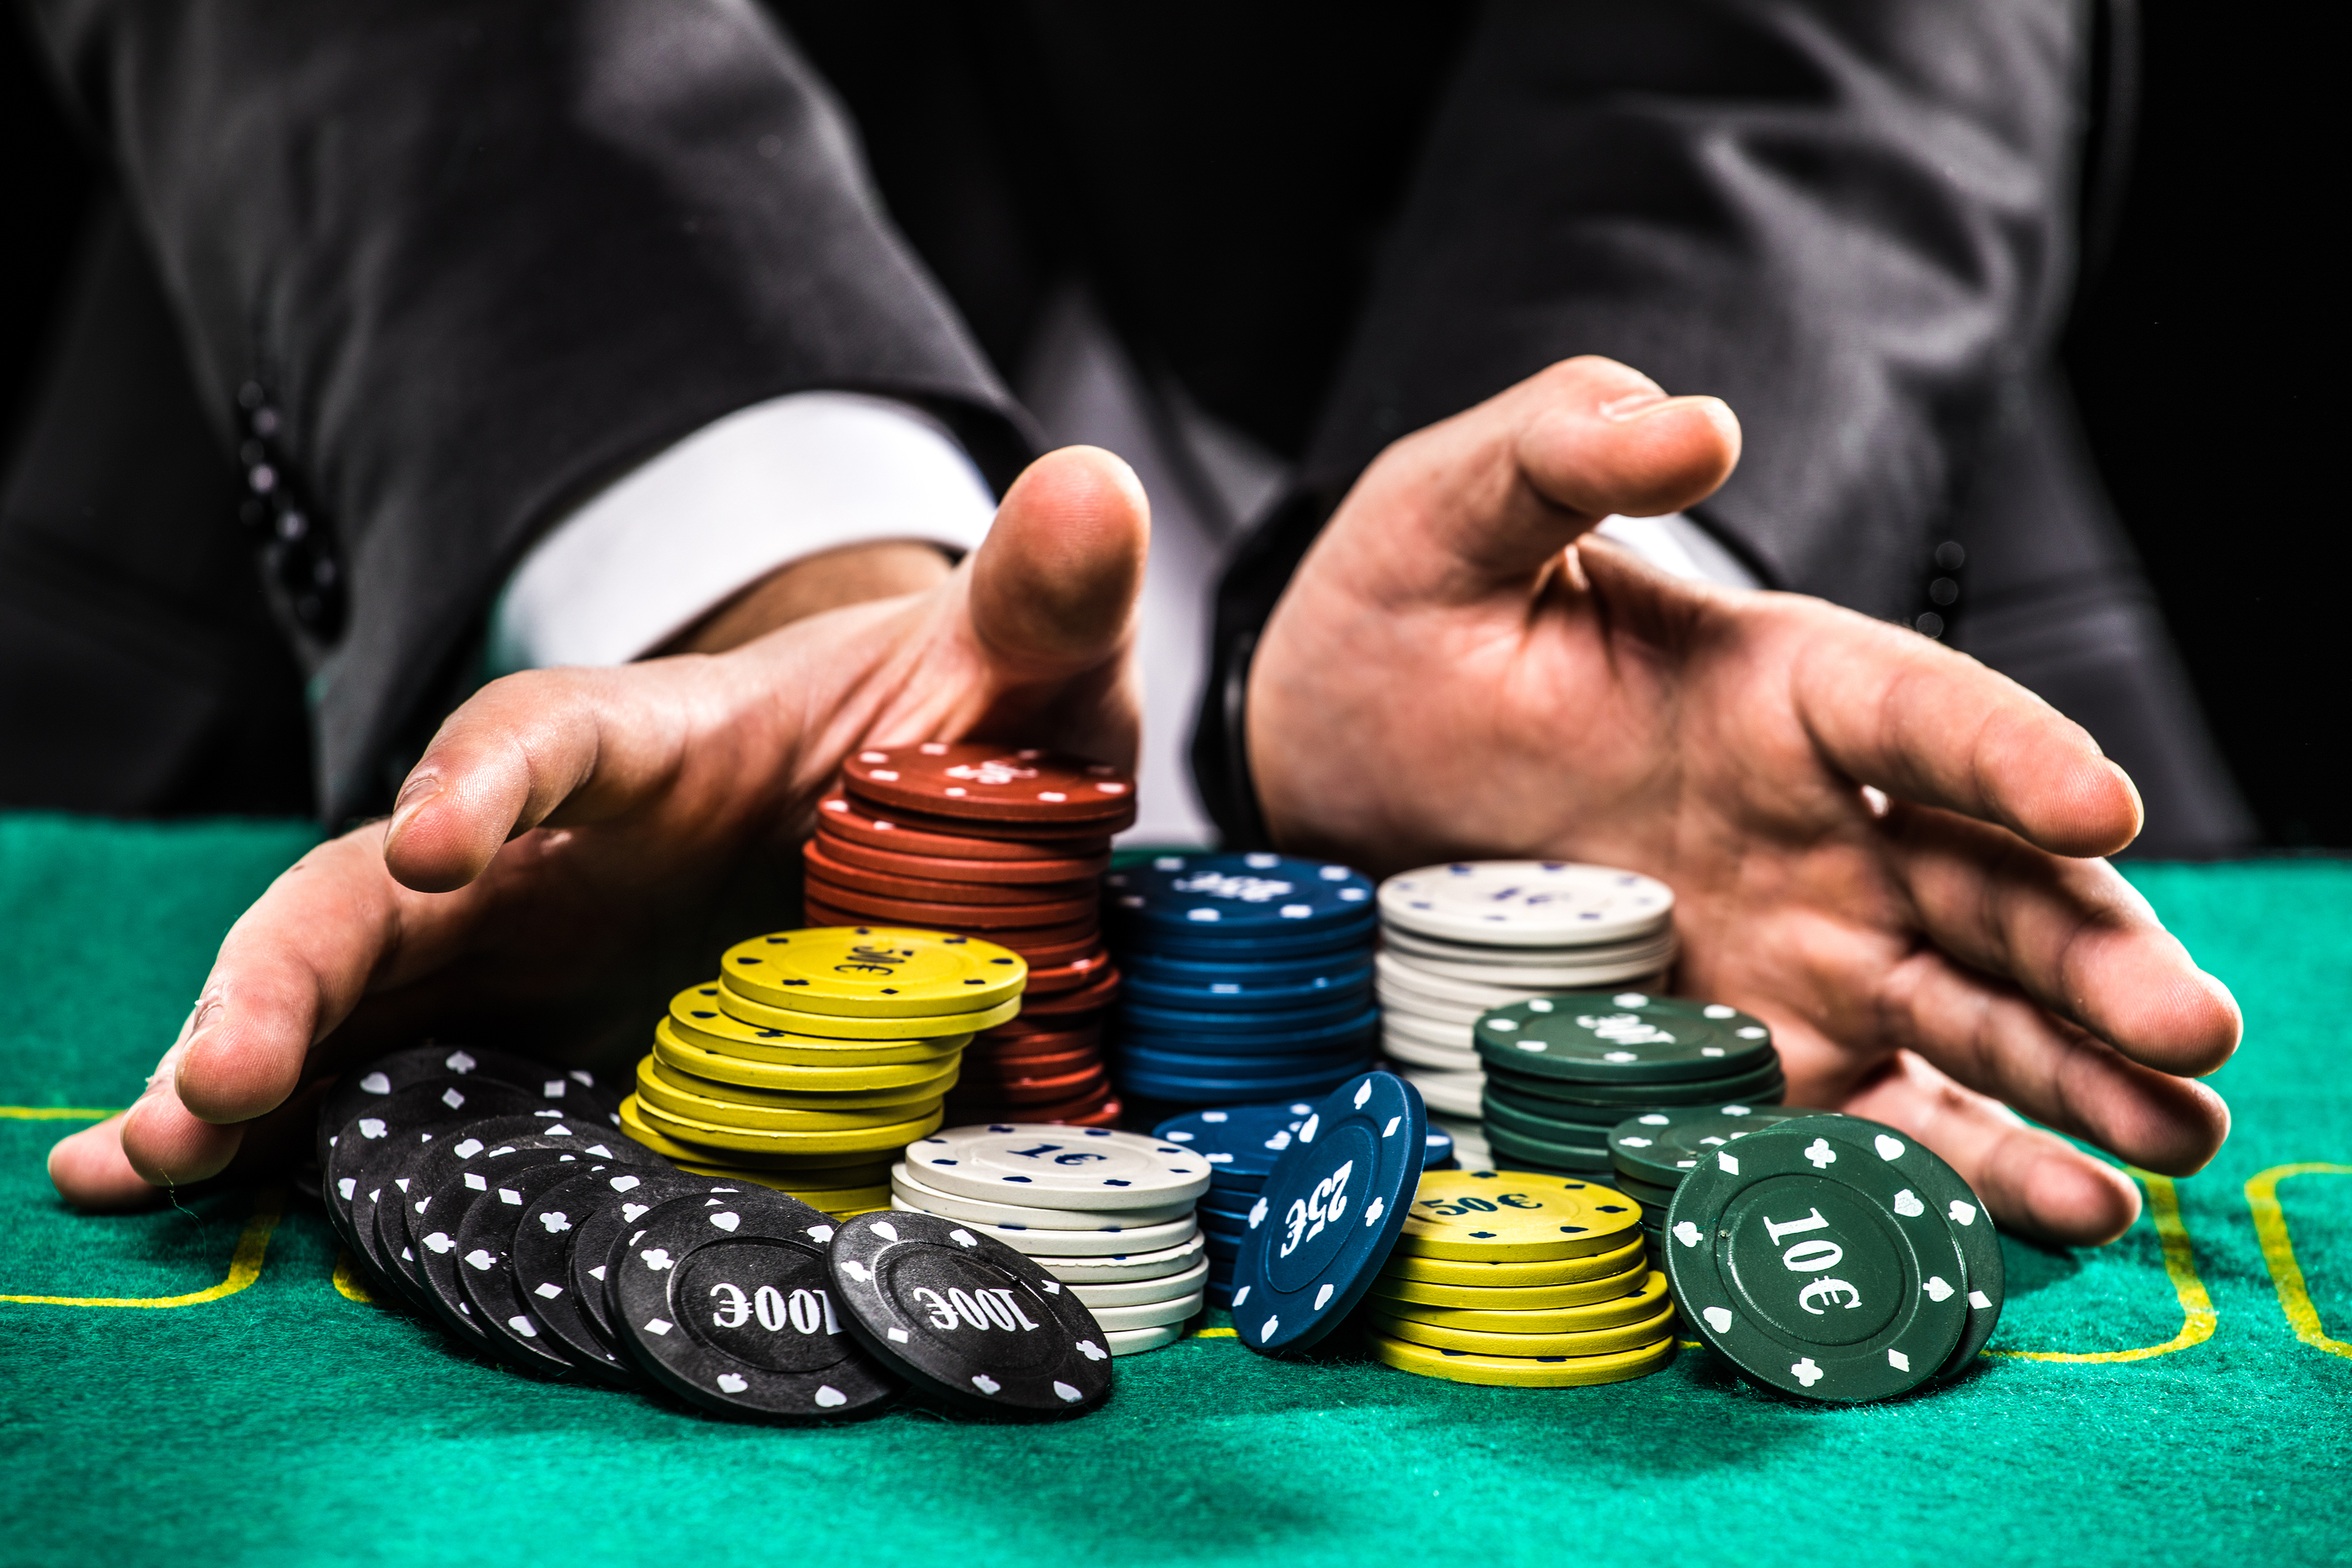 All variations of Casino Poker at Playtech casinos